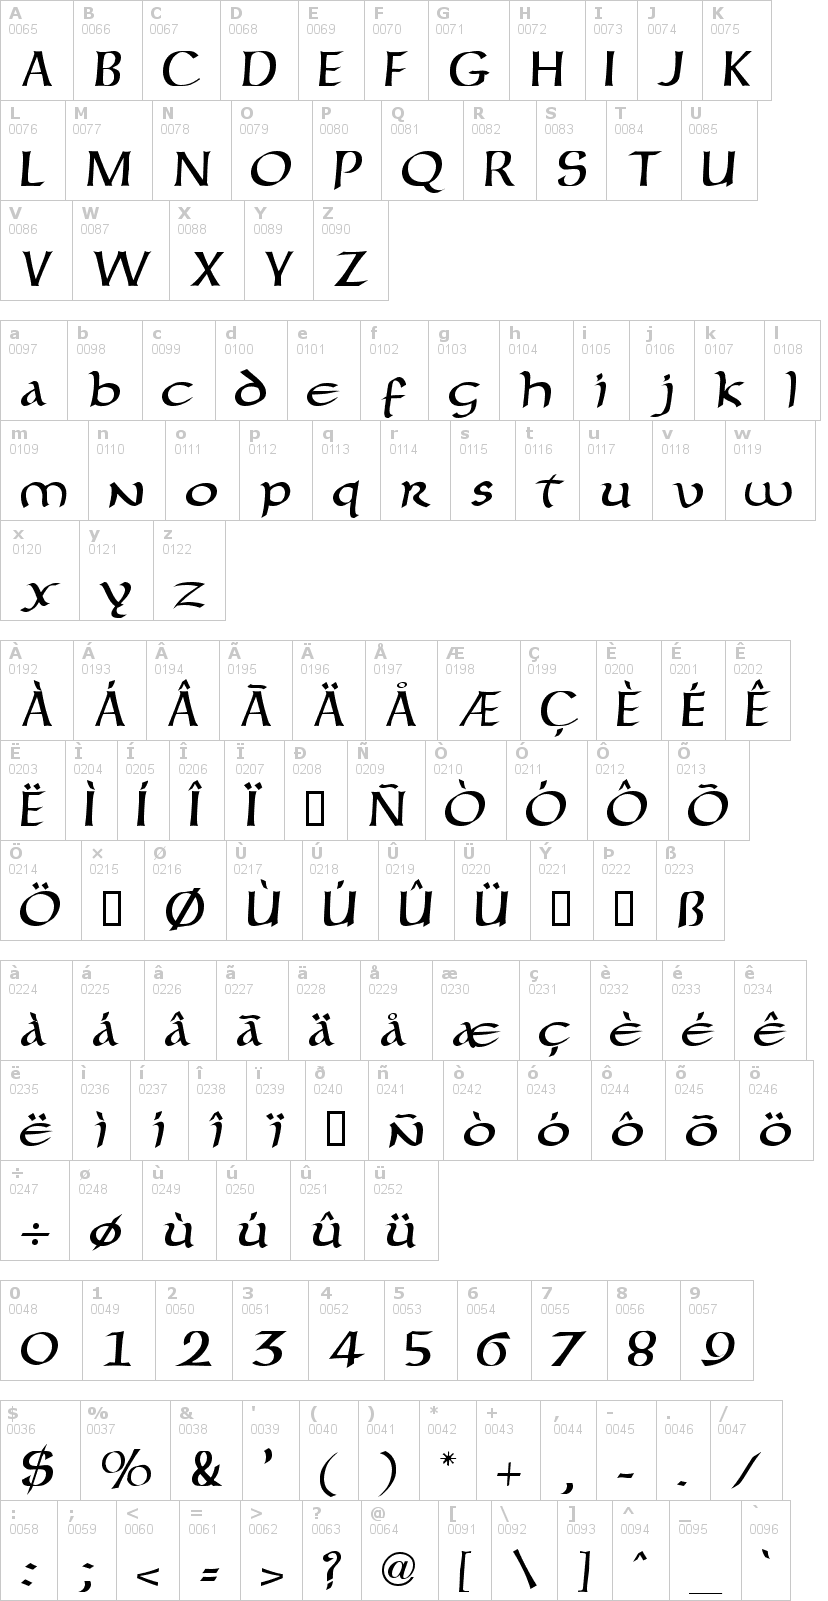 Lettere dell'alfabeto del font forgotten-uncial con le quali è possibile realizzare adesivi prespaziati